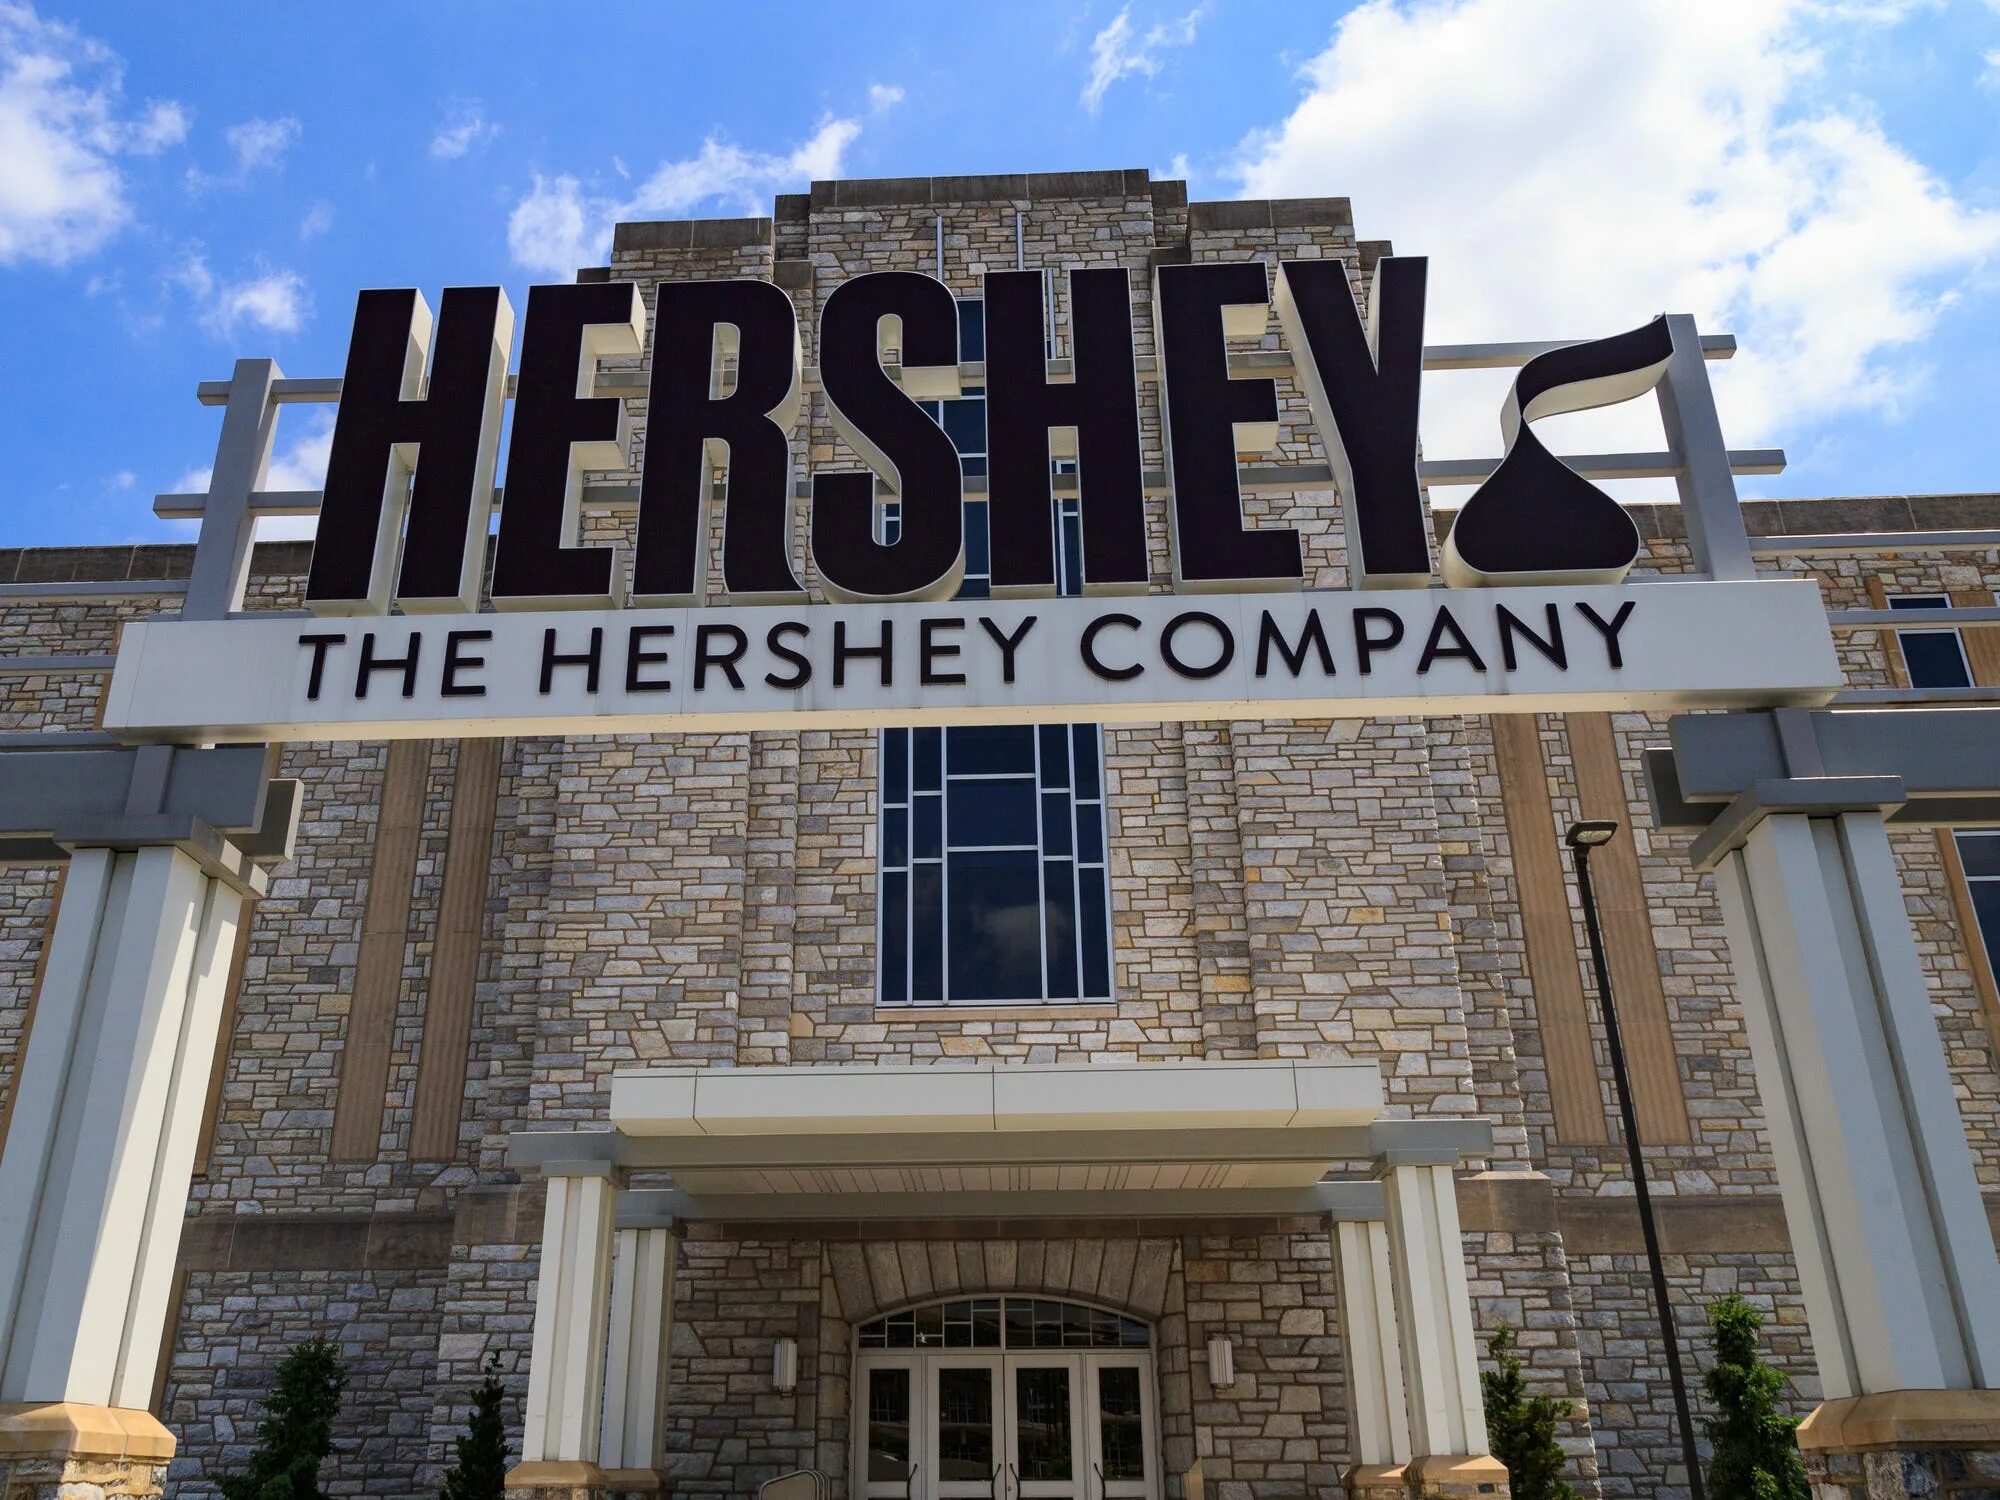 The hershey company. Херши фабрика. Херши город в США. Hershey's Company. Hershey город в США.